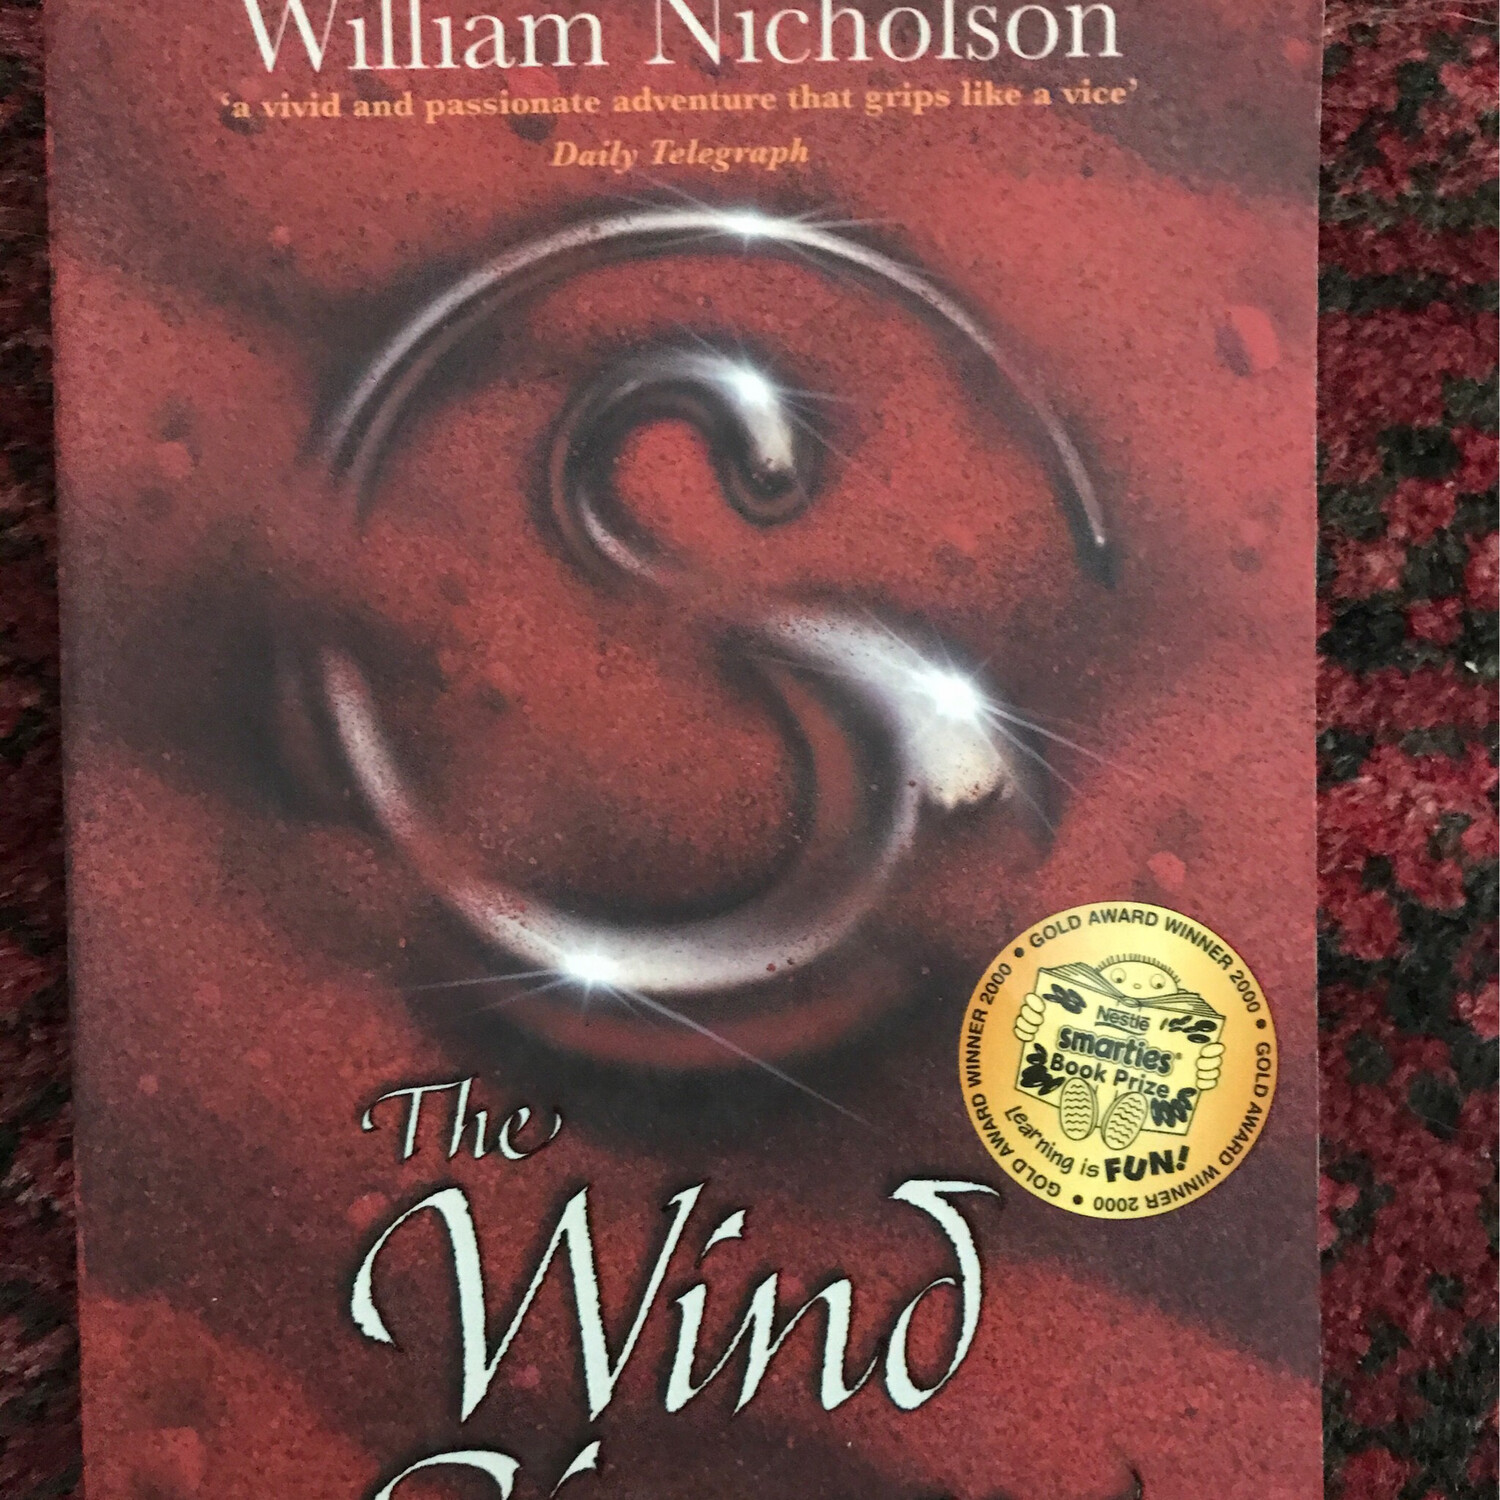 The Wind Singer, William Nicholson